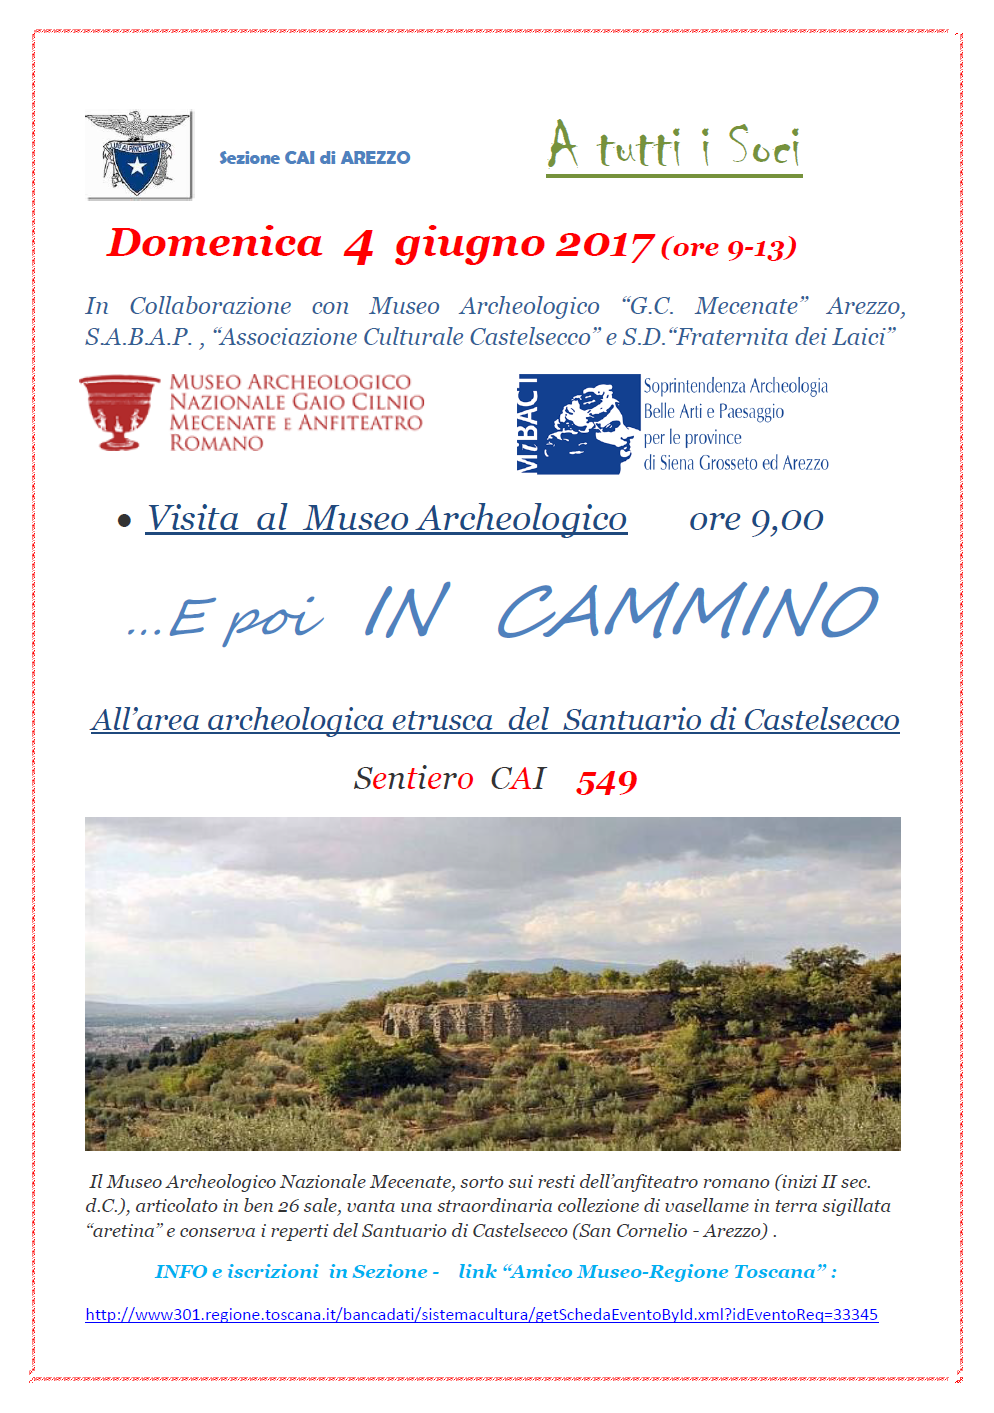 4 giugno 2017 Museo archeologico e poi in cammino, all'area archeologica di Castelsecco